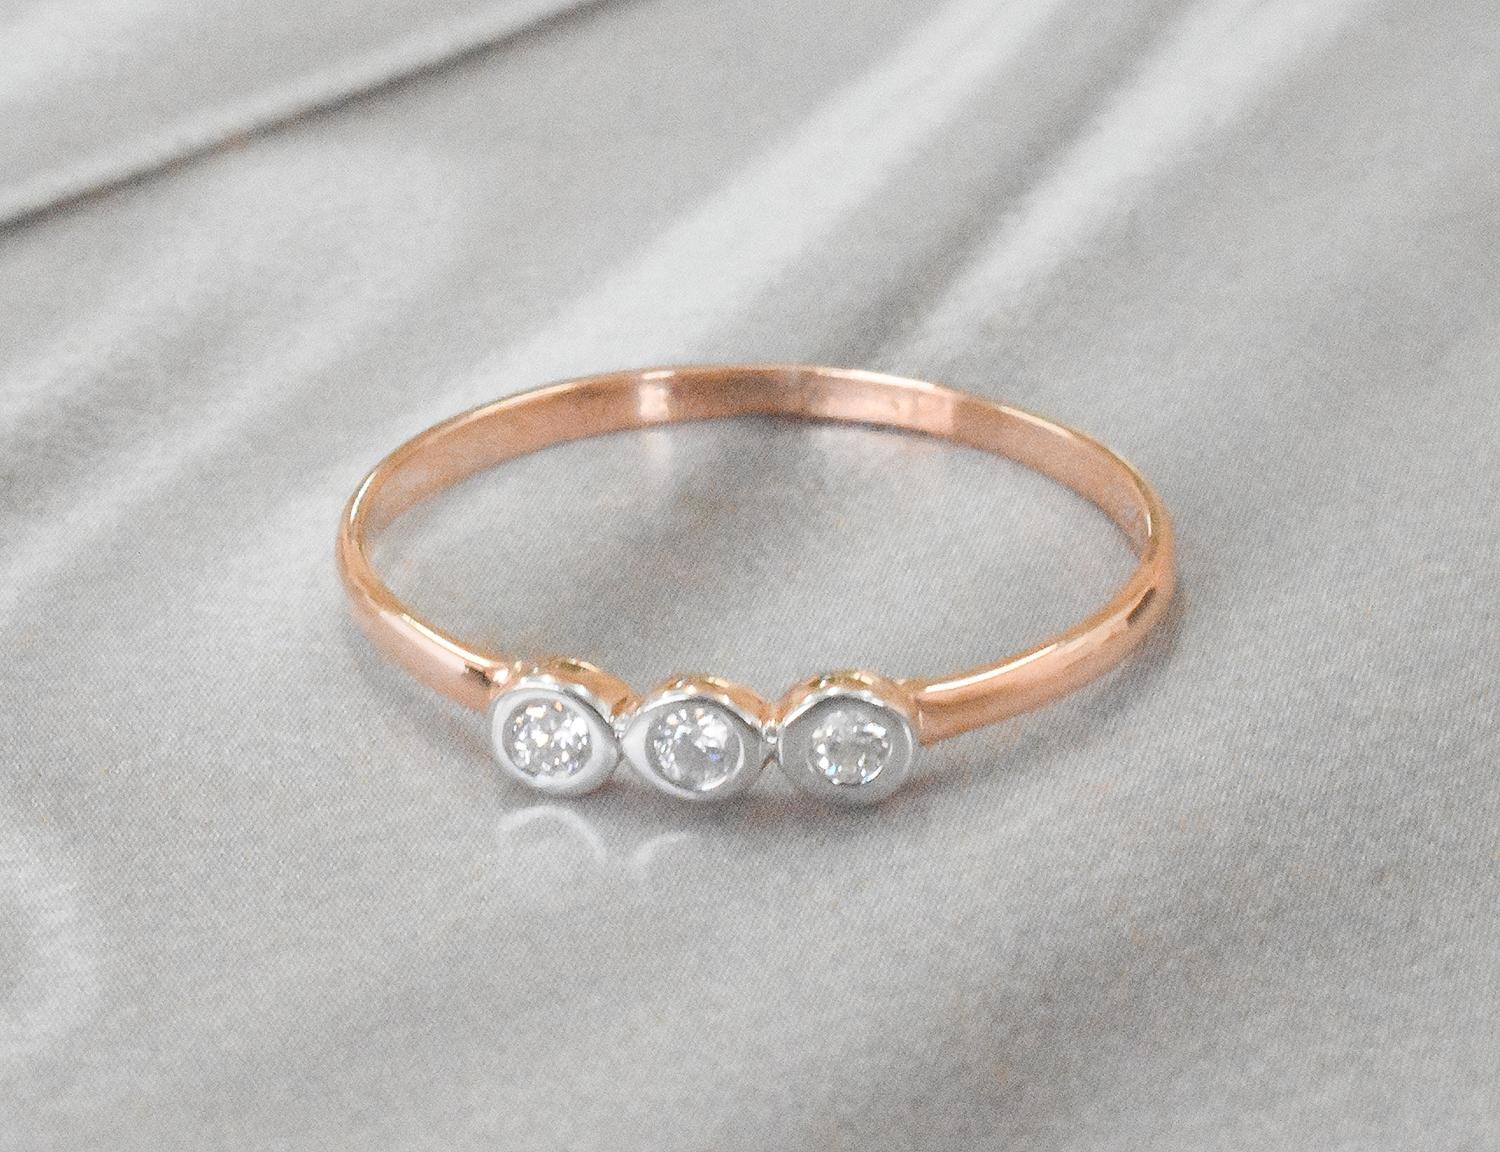 For Sale:  18k Gold Diamond 1.9 mm Ring Bezel Setting Three Diamond Ring Trio Diamond Ring 6